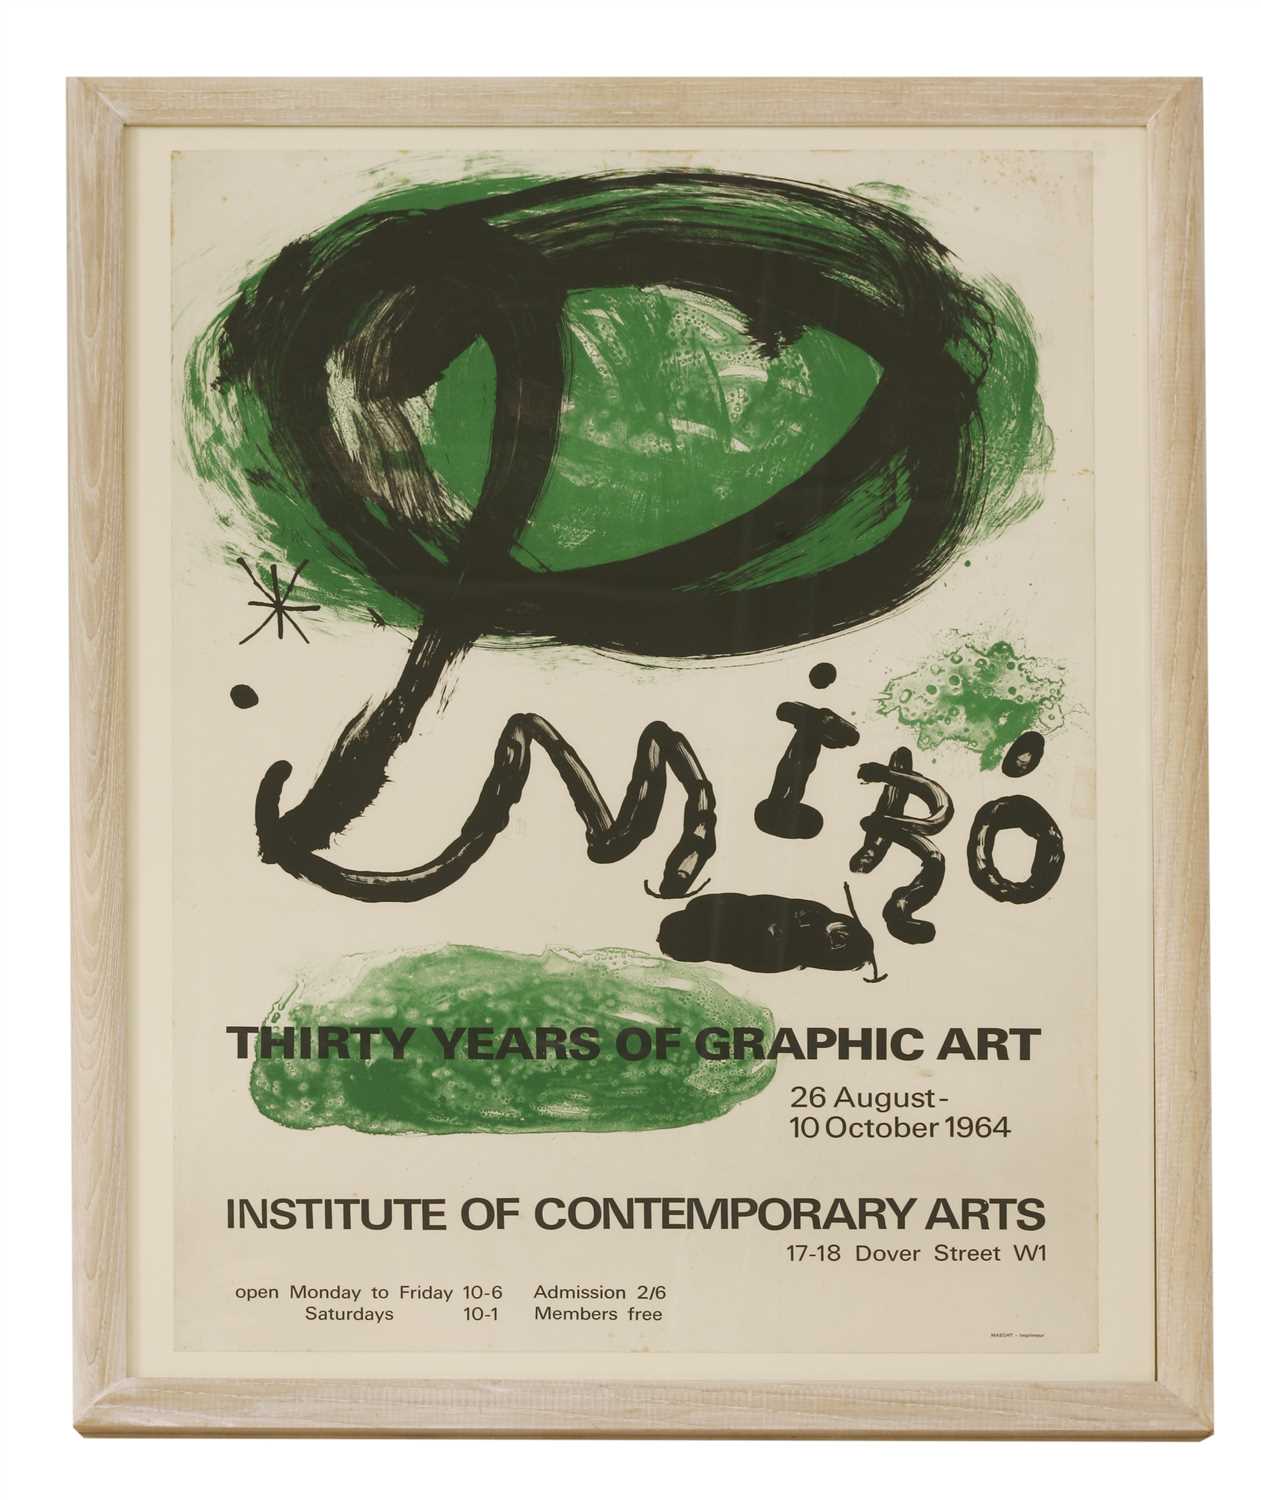 Lot 324 - 'Miro: Thirty Years of Graphic Art'